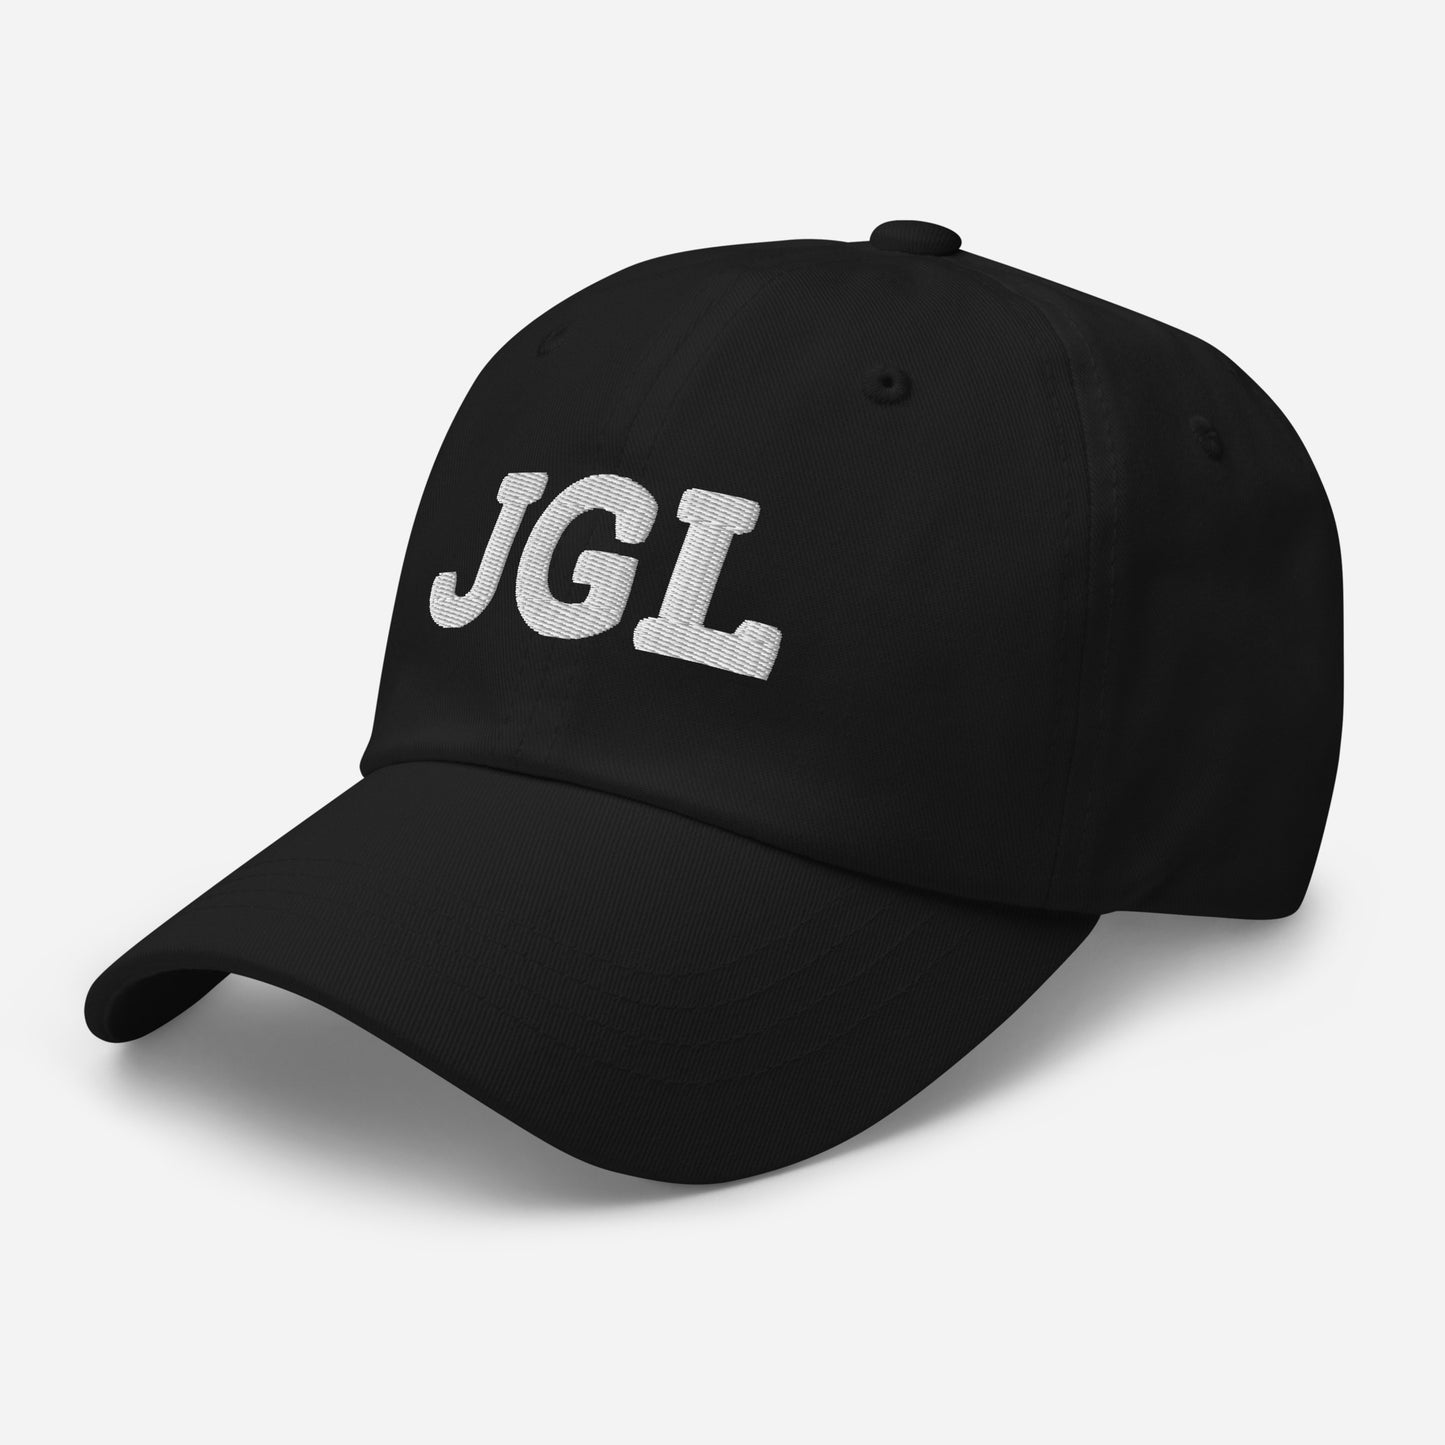 Jgl Hat Meaning / Jgl Hat / Jgl Meaning / Jgl Dad hat